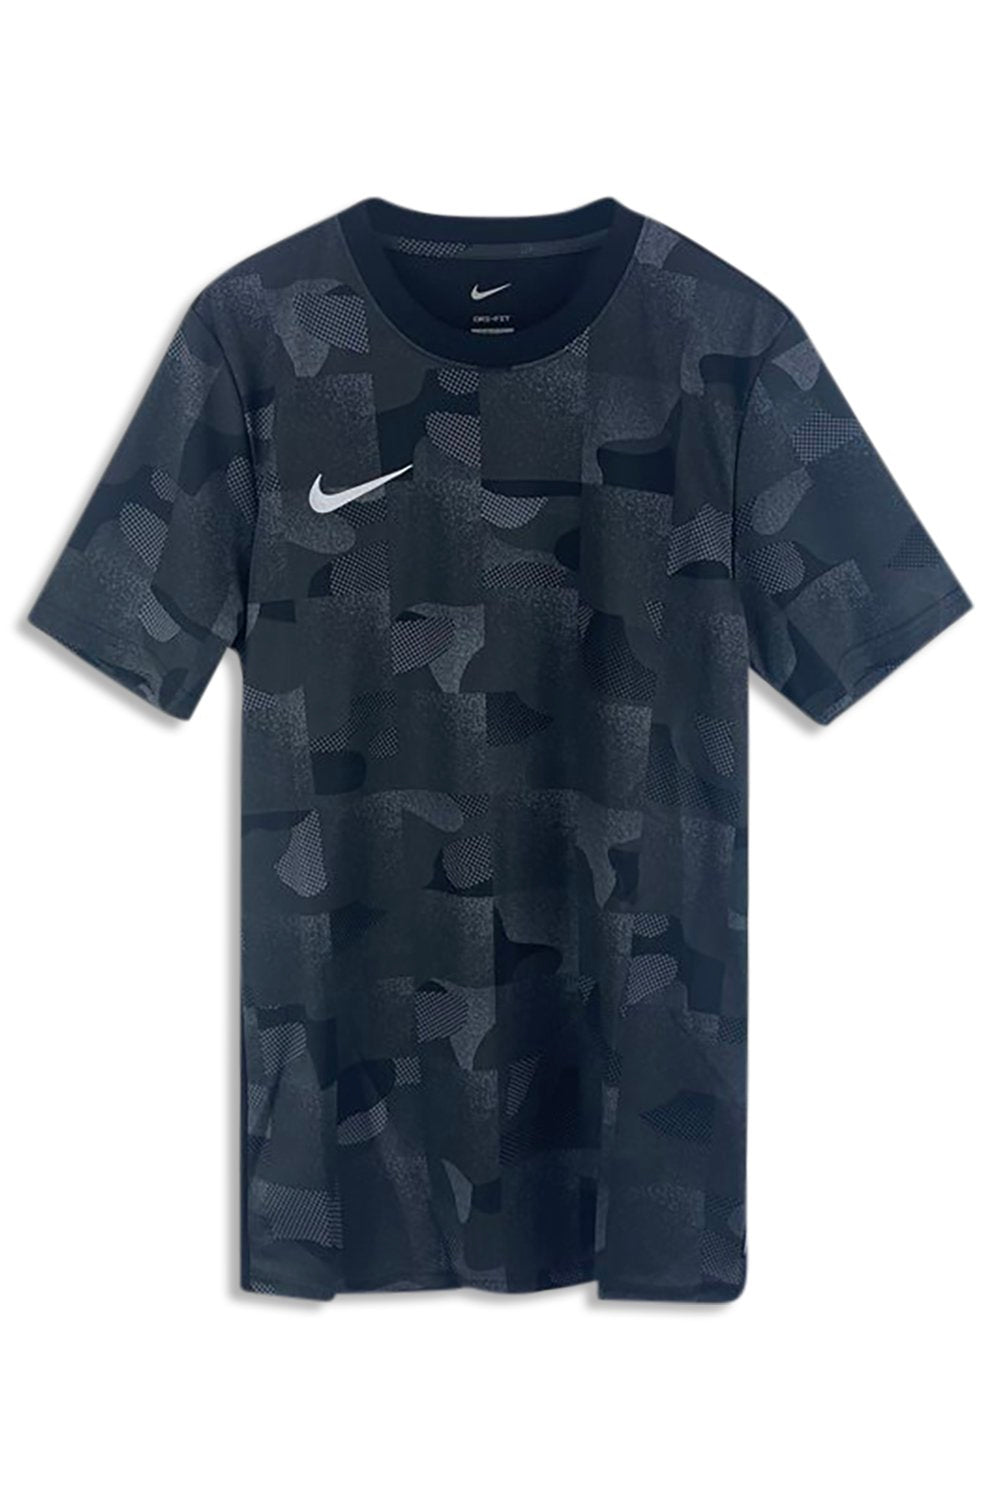 Men's Black Nike F.C Dri-Fit Training T-Shirt